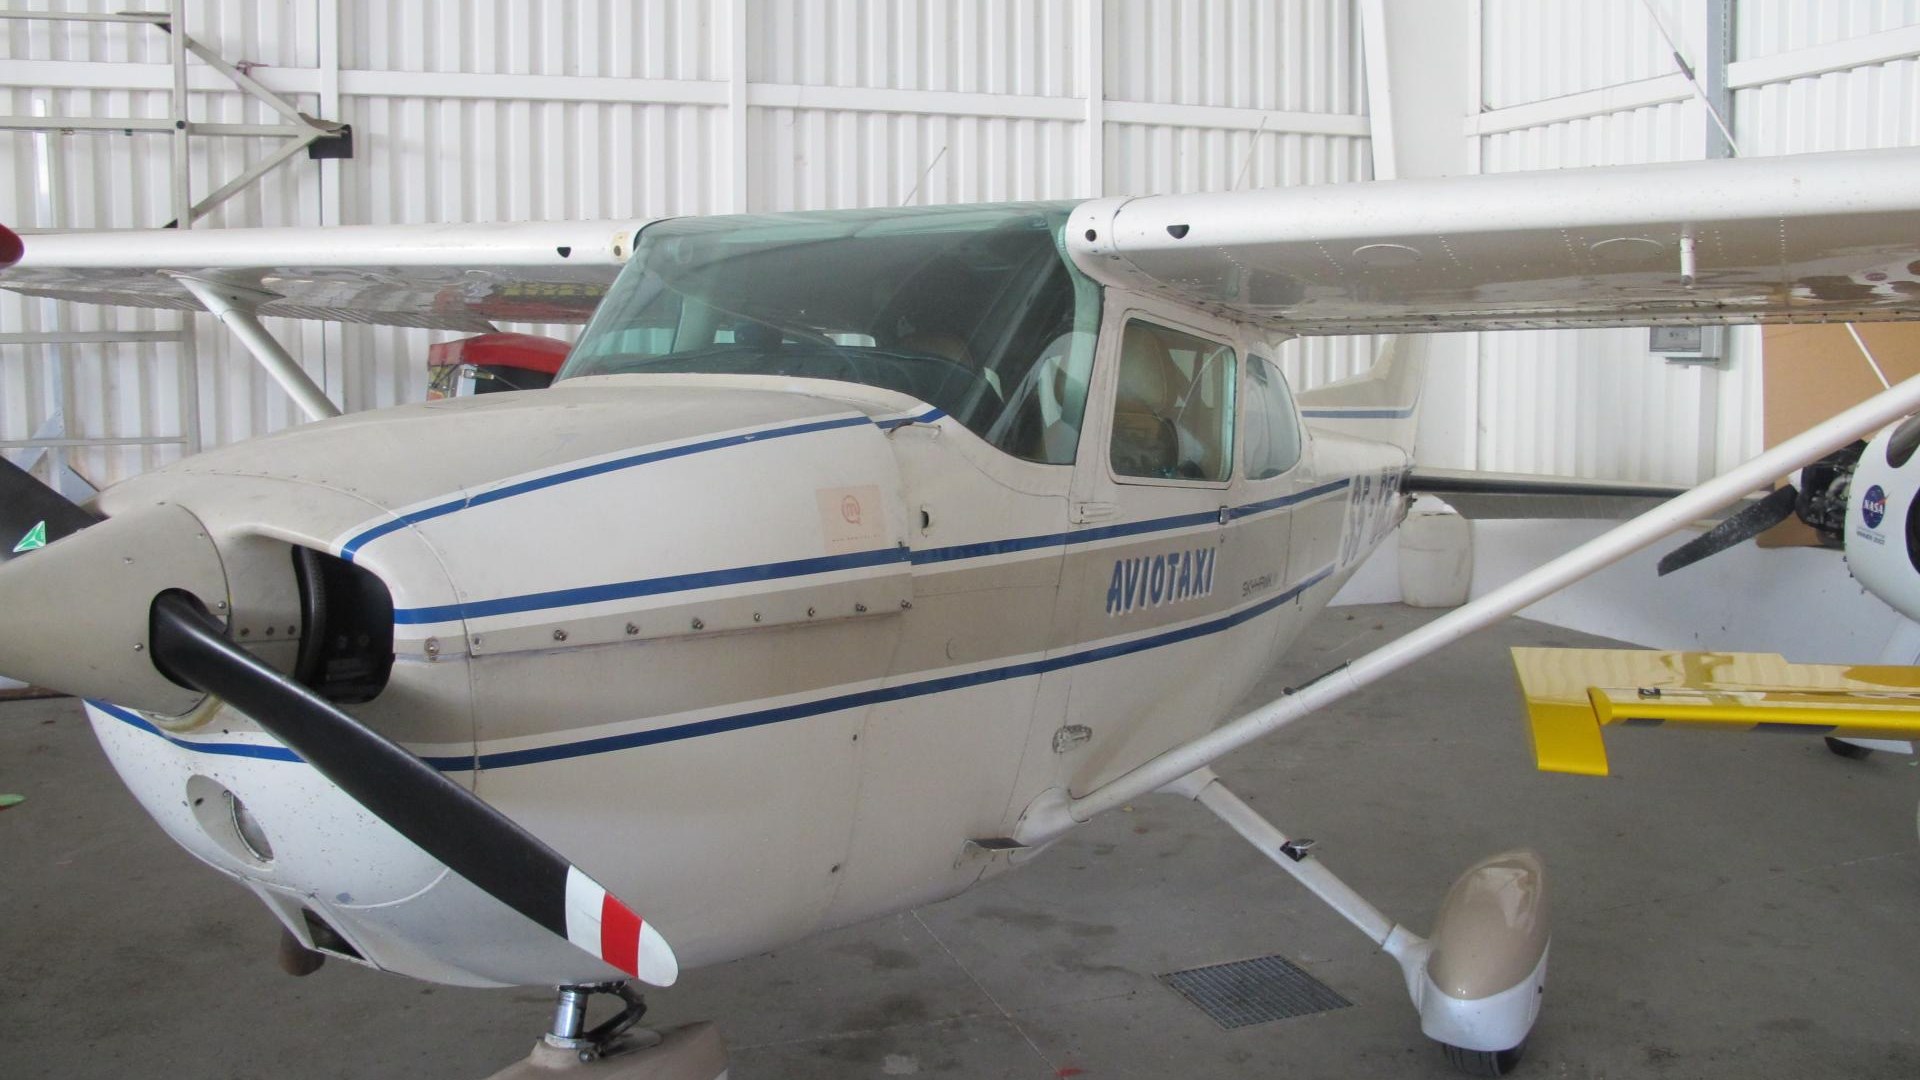 Un Slovène a été condamné à trois ans et demi de prison pour avoir volé un avion dans une école de pilotage française